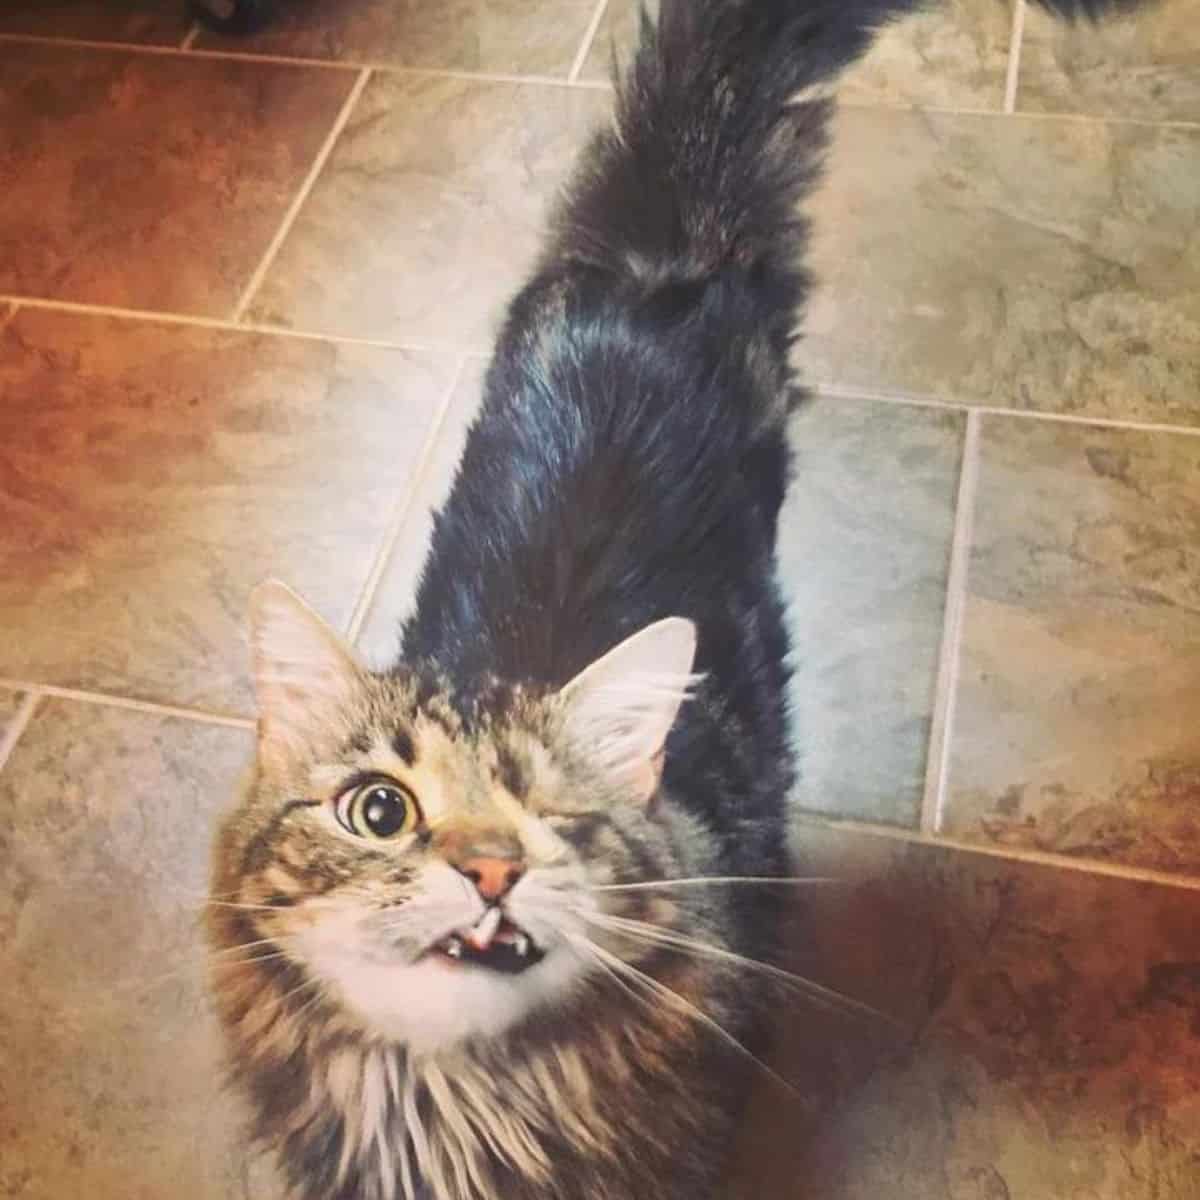 oneeyed cat standing on kitchen floor